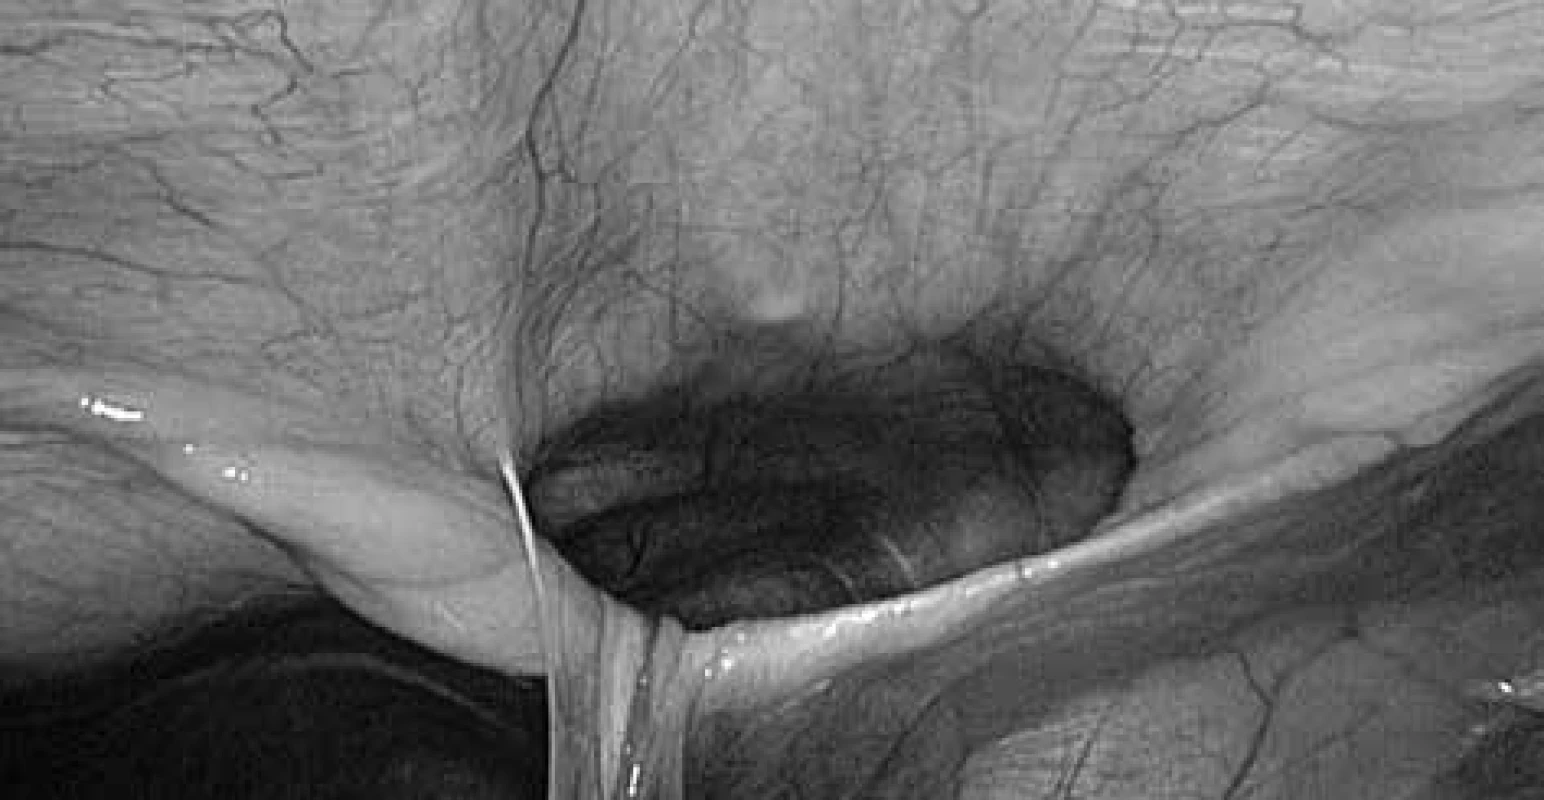 Morgagniho kýla při laparoskopii, ligamentum teres hepatis vtaženo do defektu v bránici<br>
Fig. 5: Laparoscopical view of Morgagni hernia, ligamentum teres hepatis in the diaphragmatic defect 